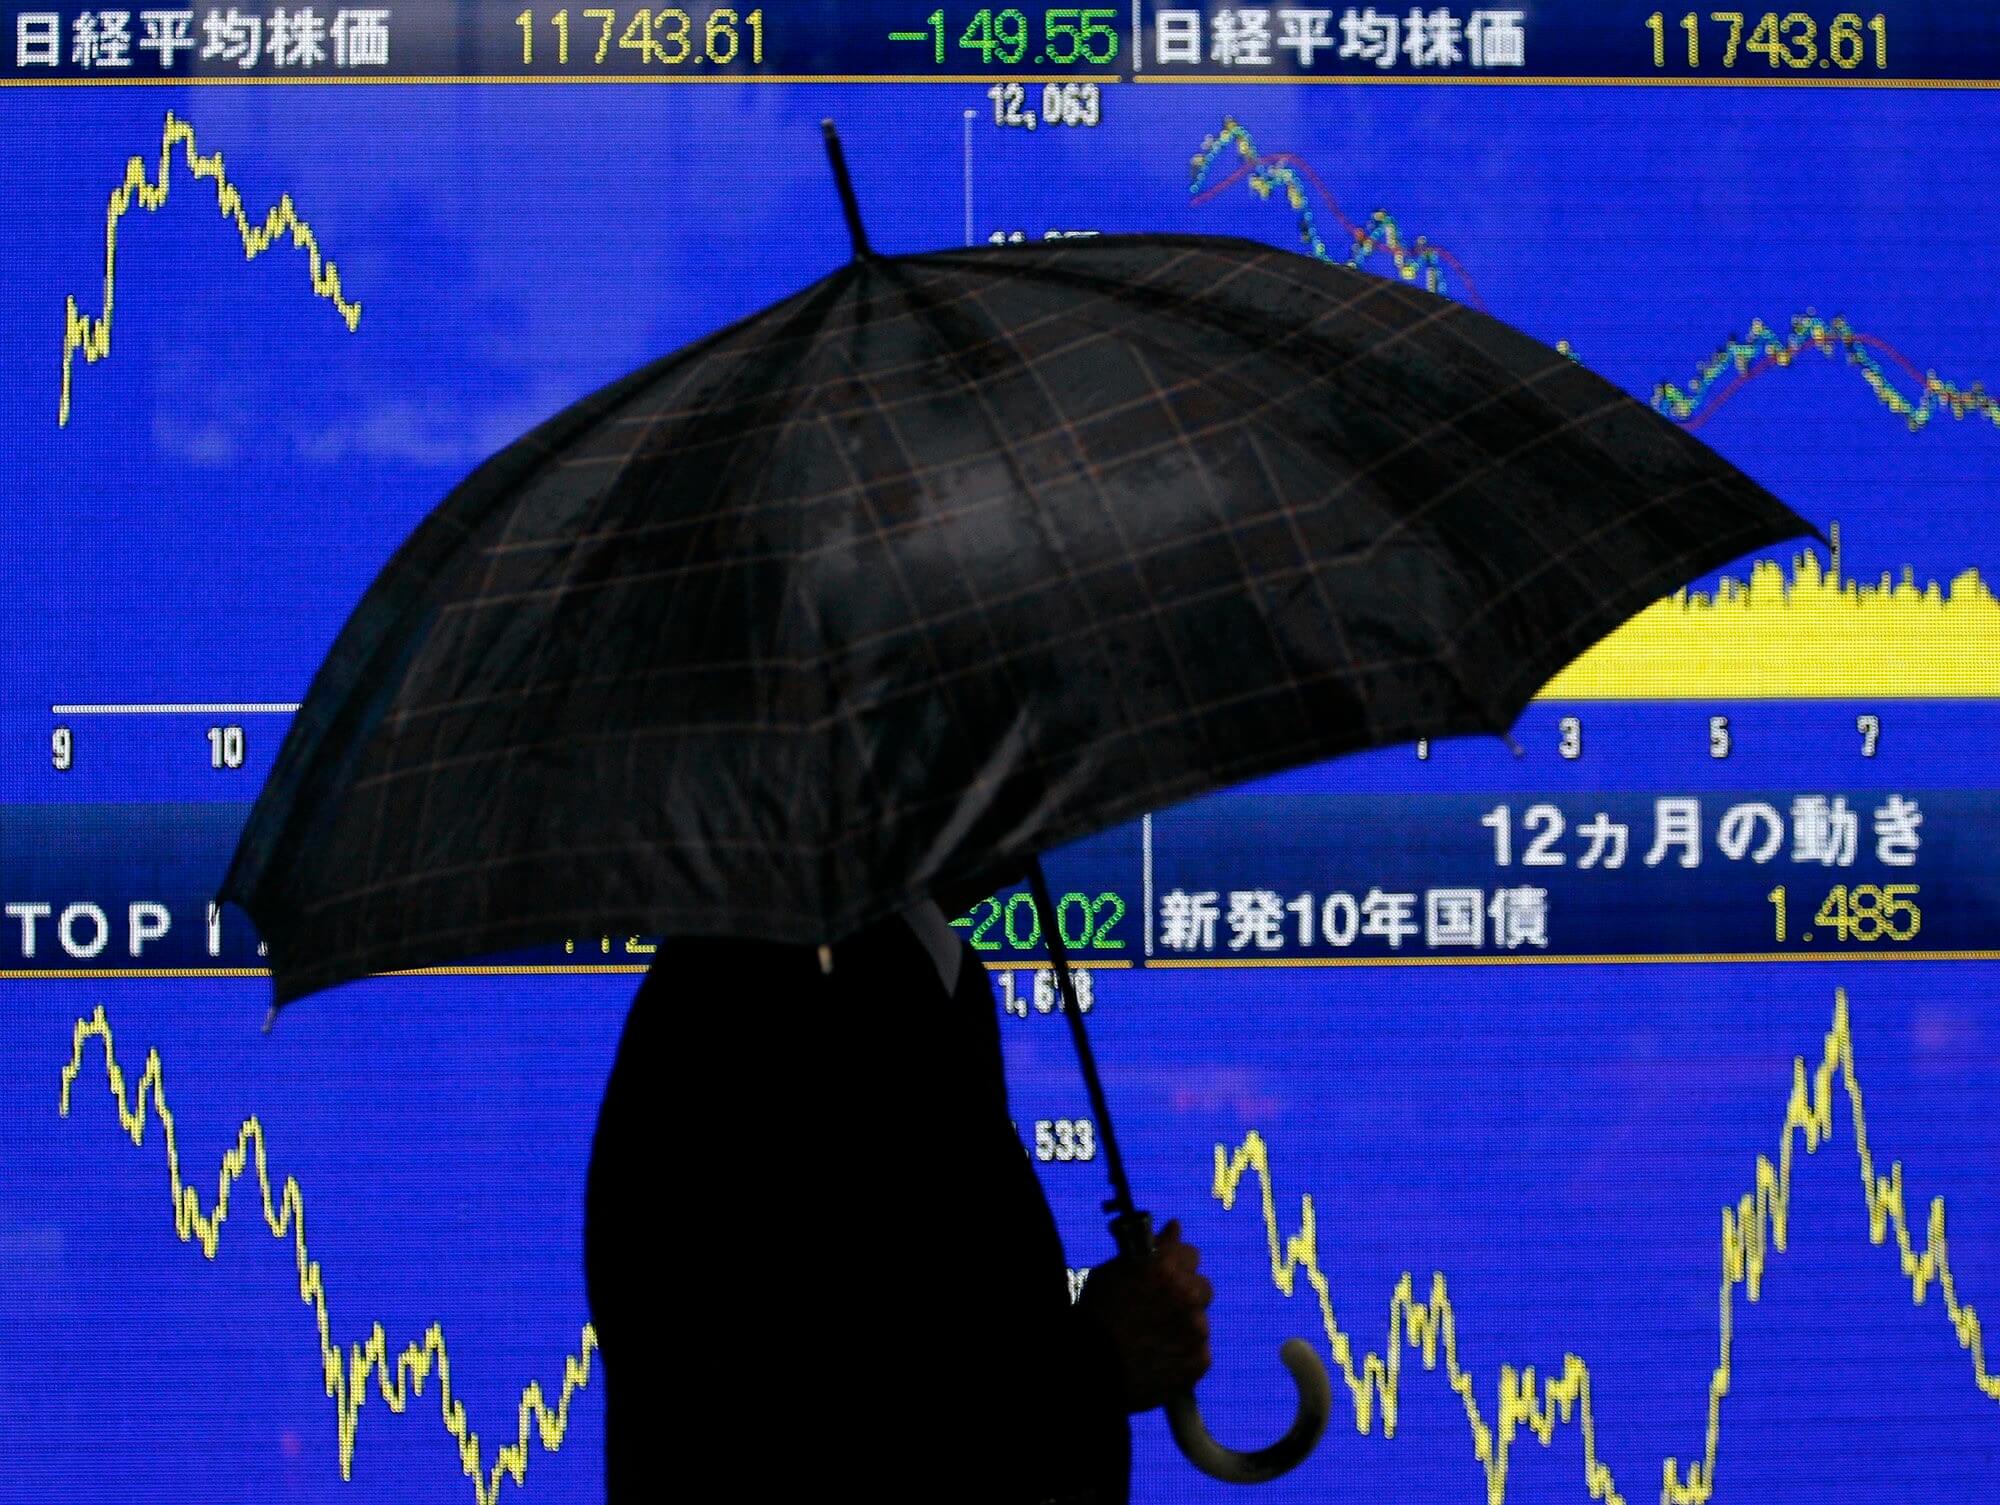 Fortaleza del yen lleva a la baja la Bolsa de Tokio